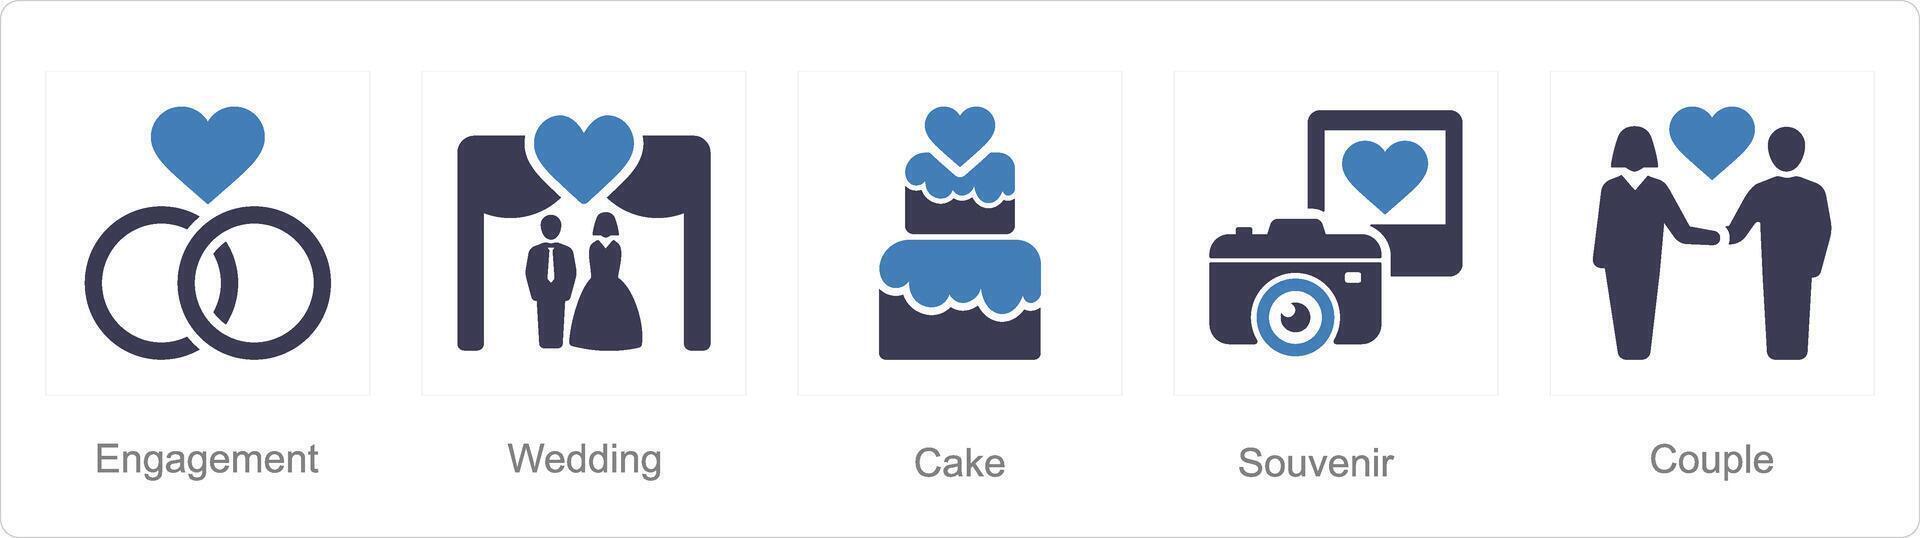 en uppsättning av 5 smekmånad ikoner som engagemang, bröllop, kaka vektor